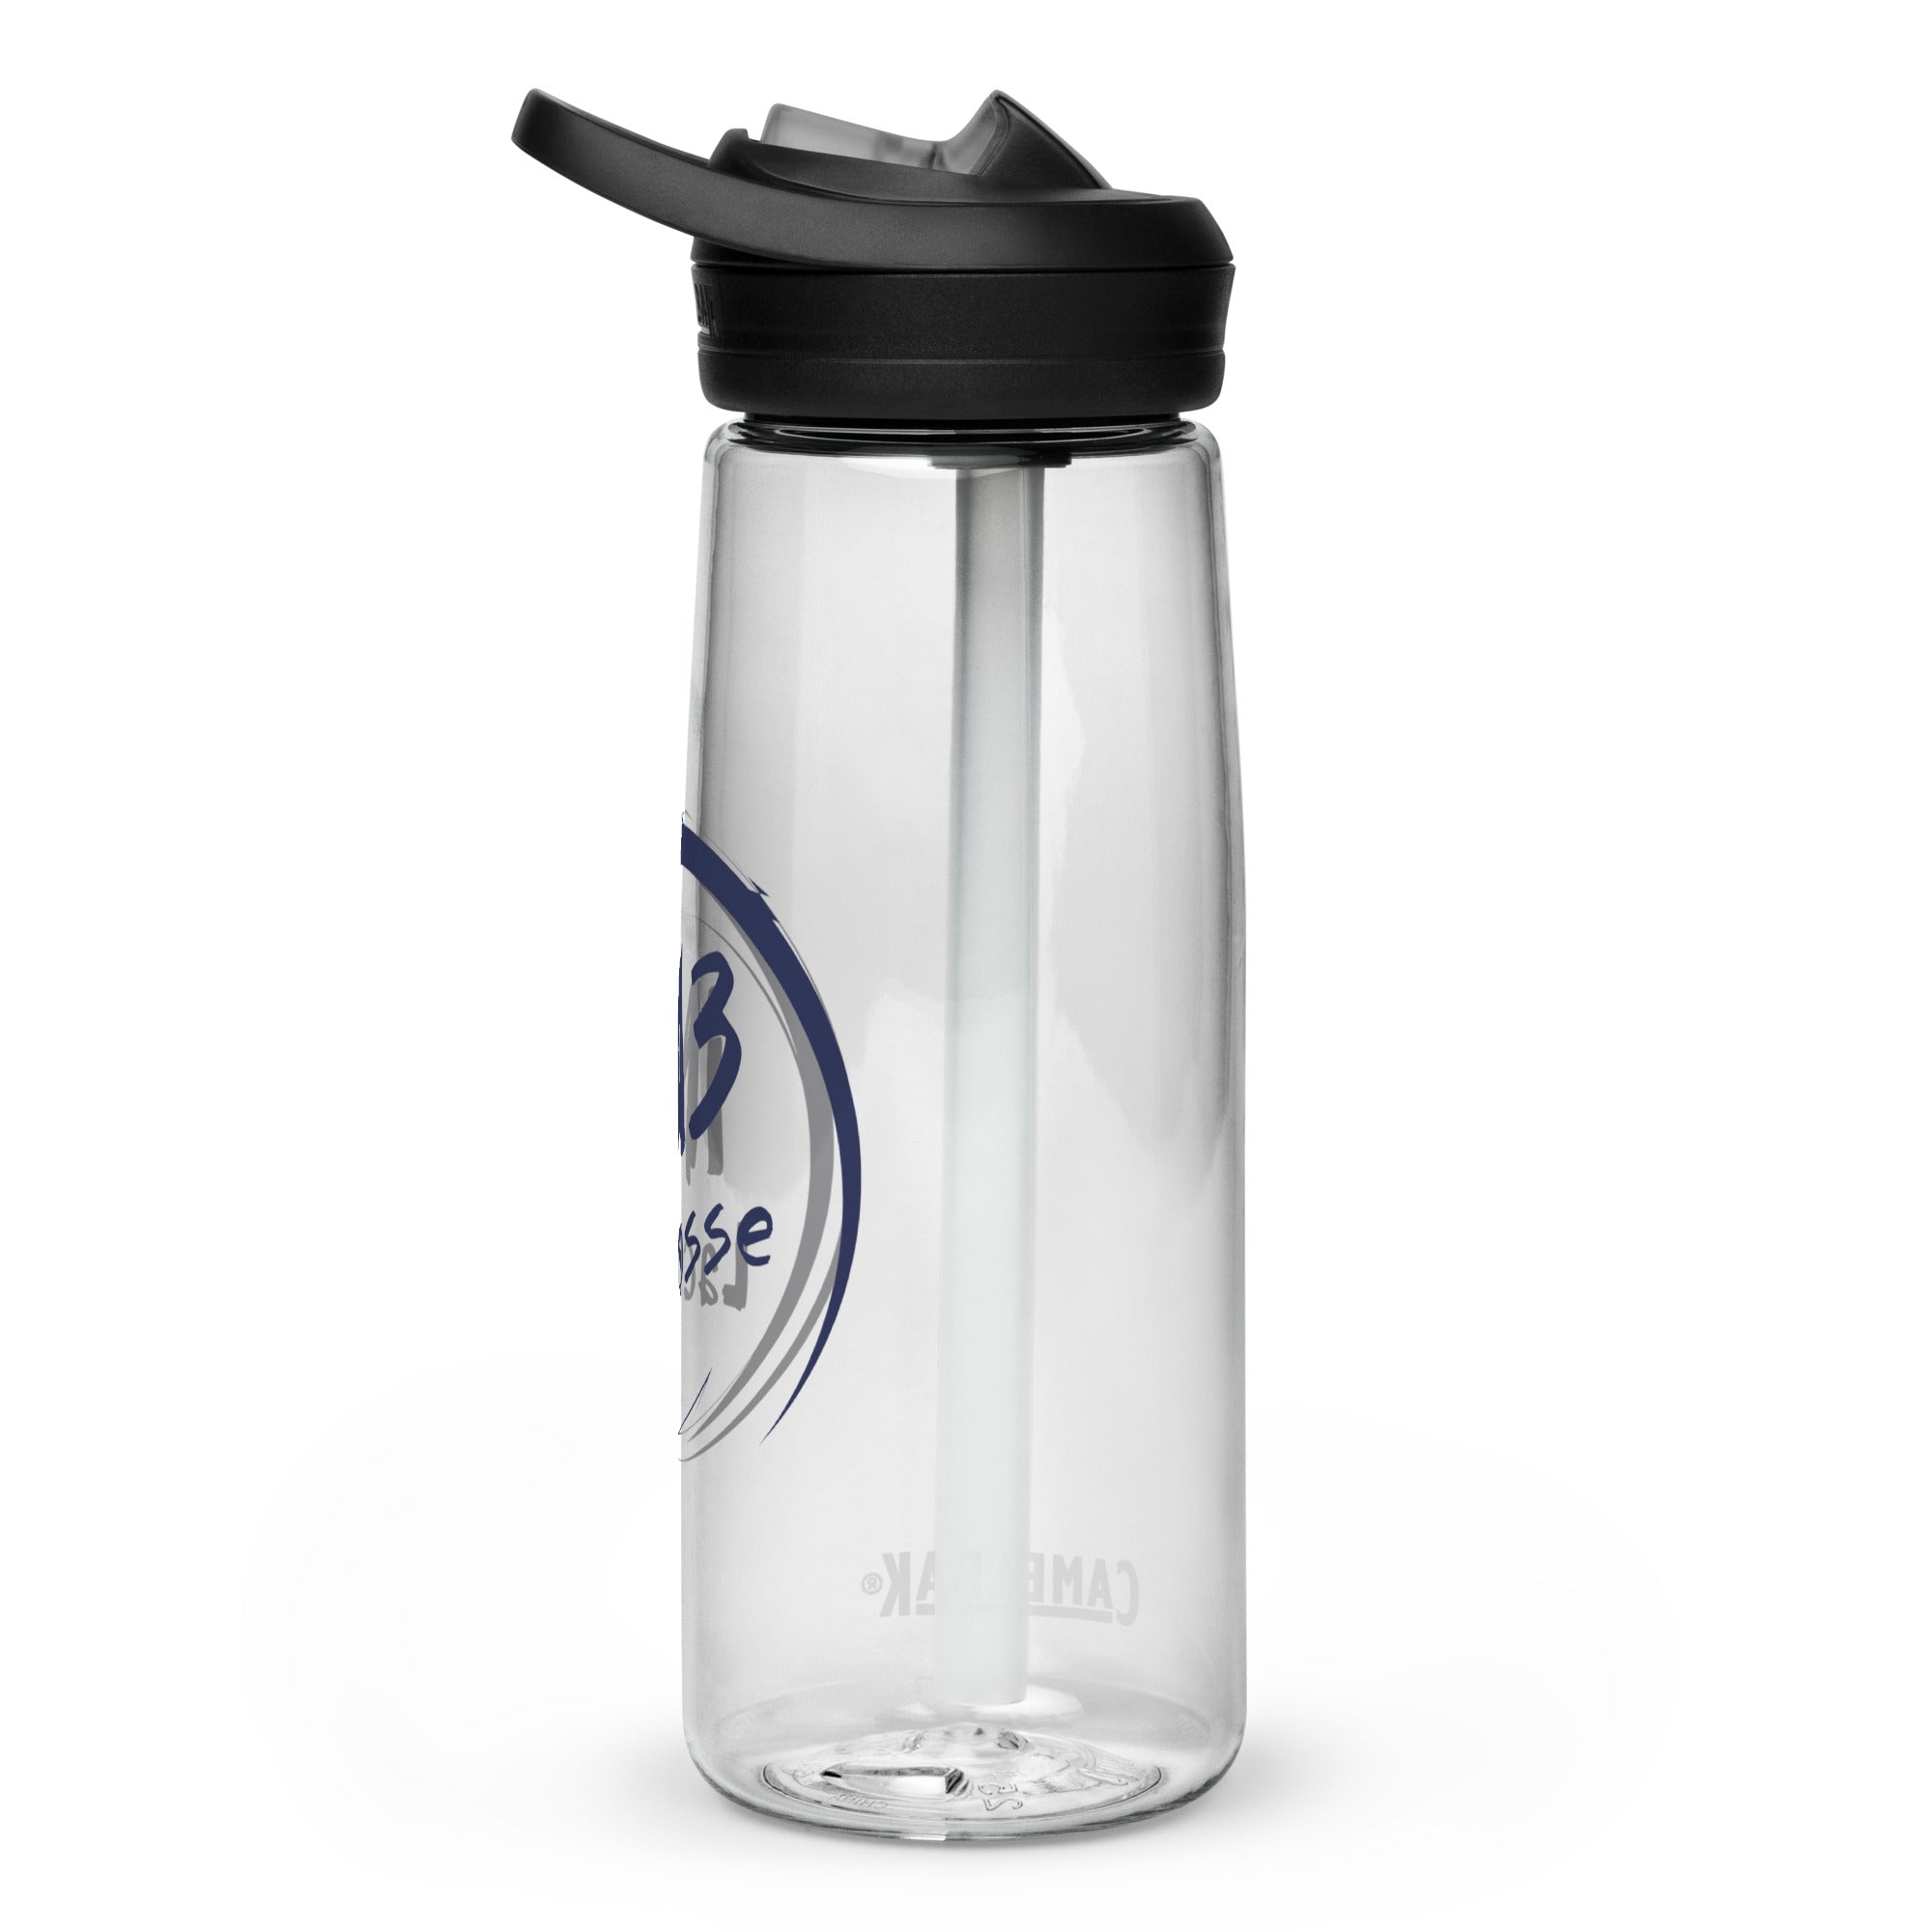 iM3 Sports water bottle